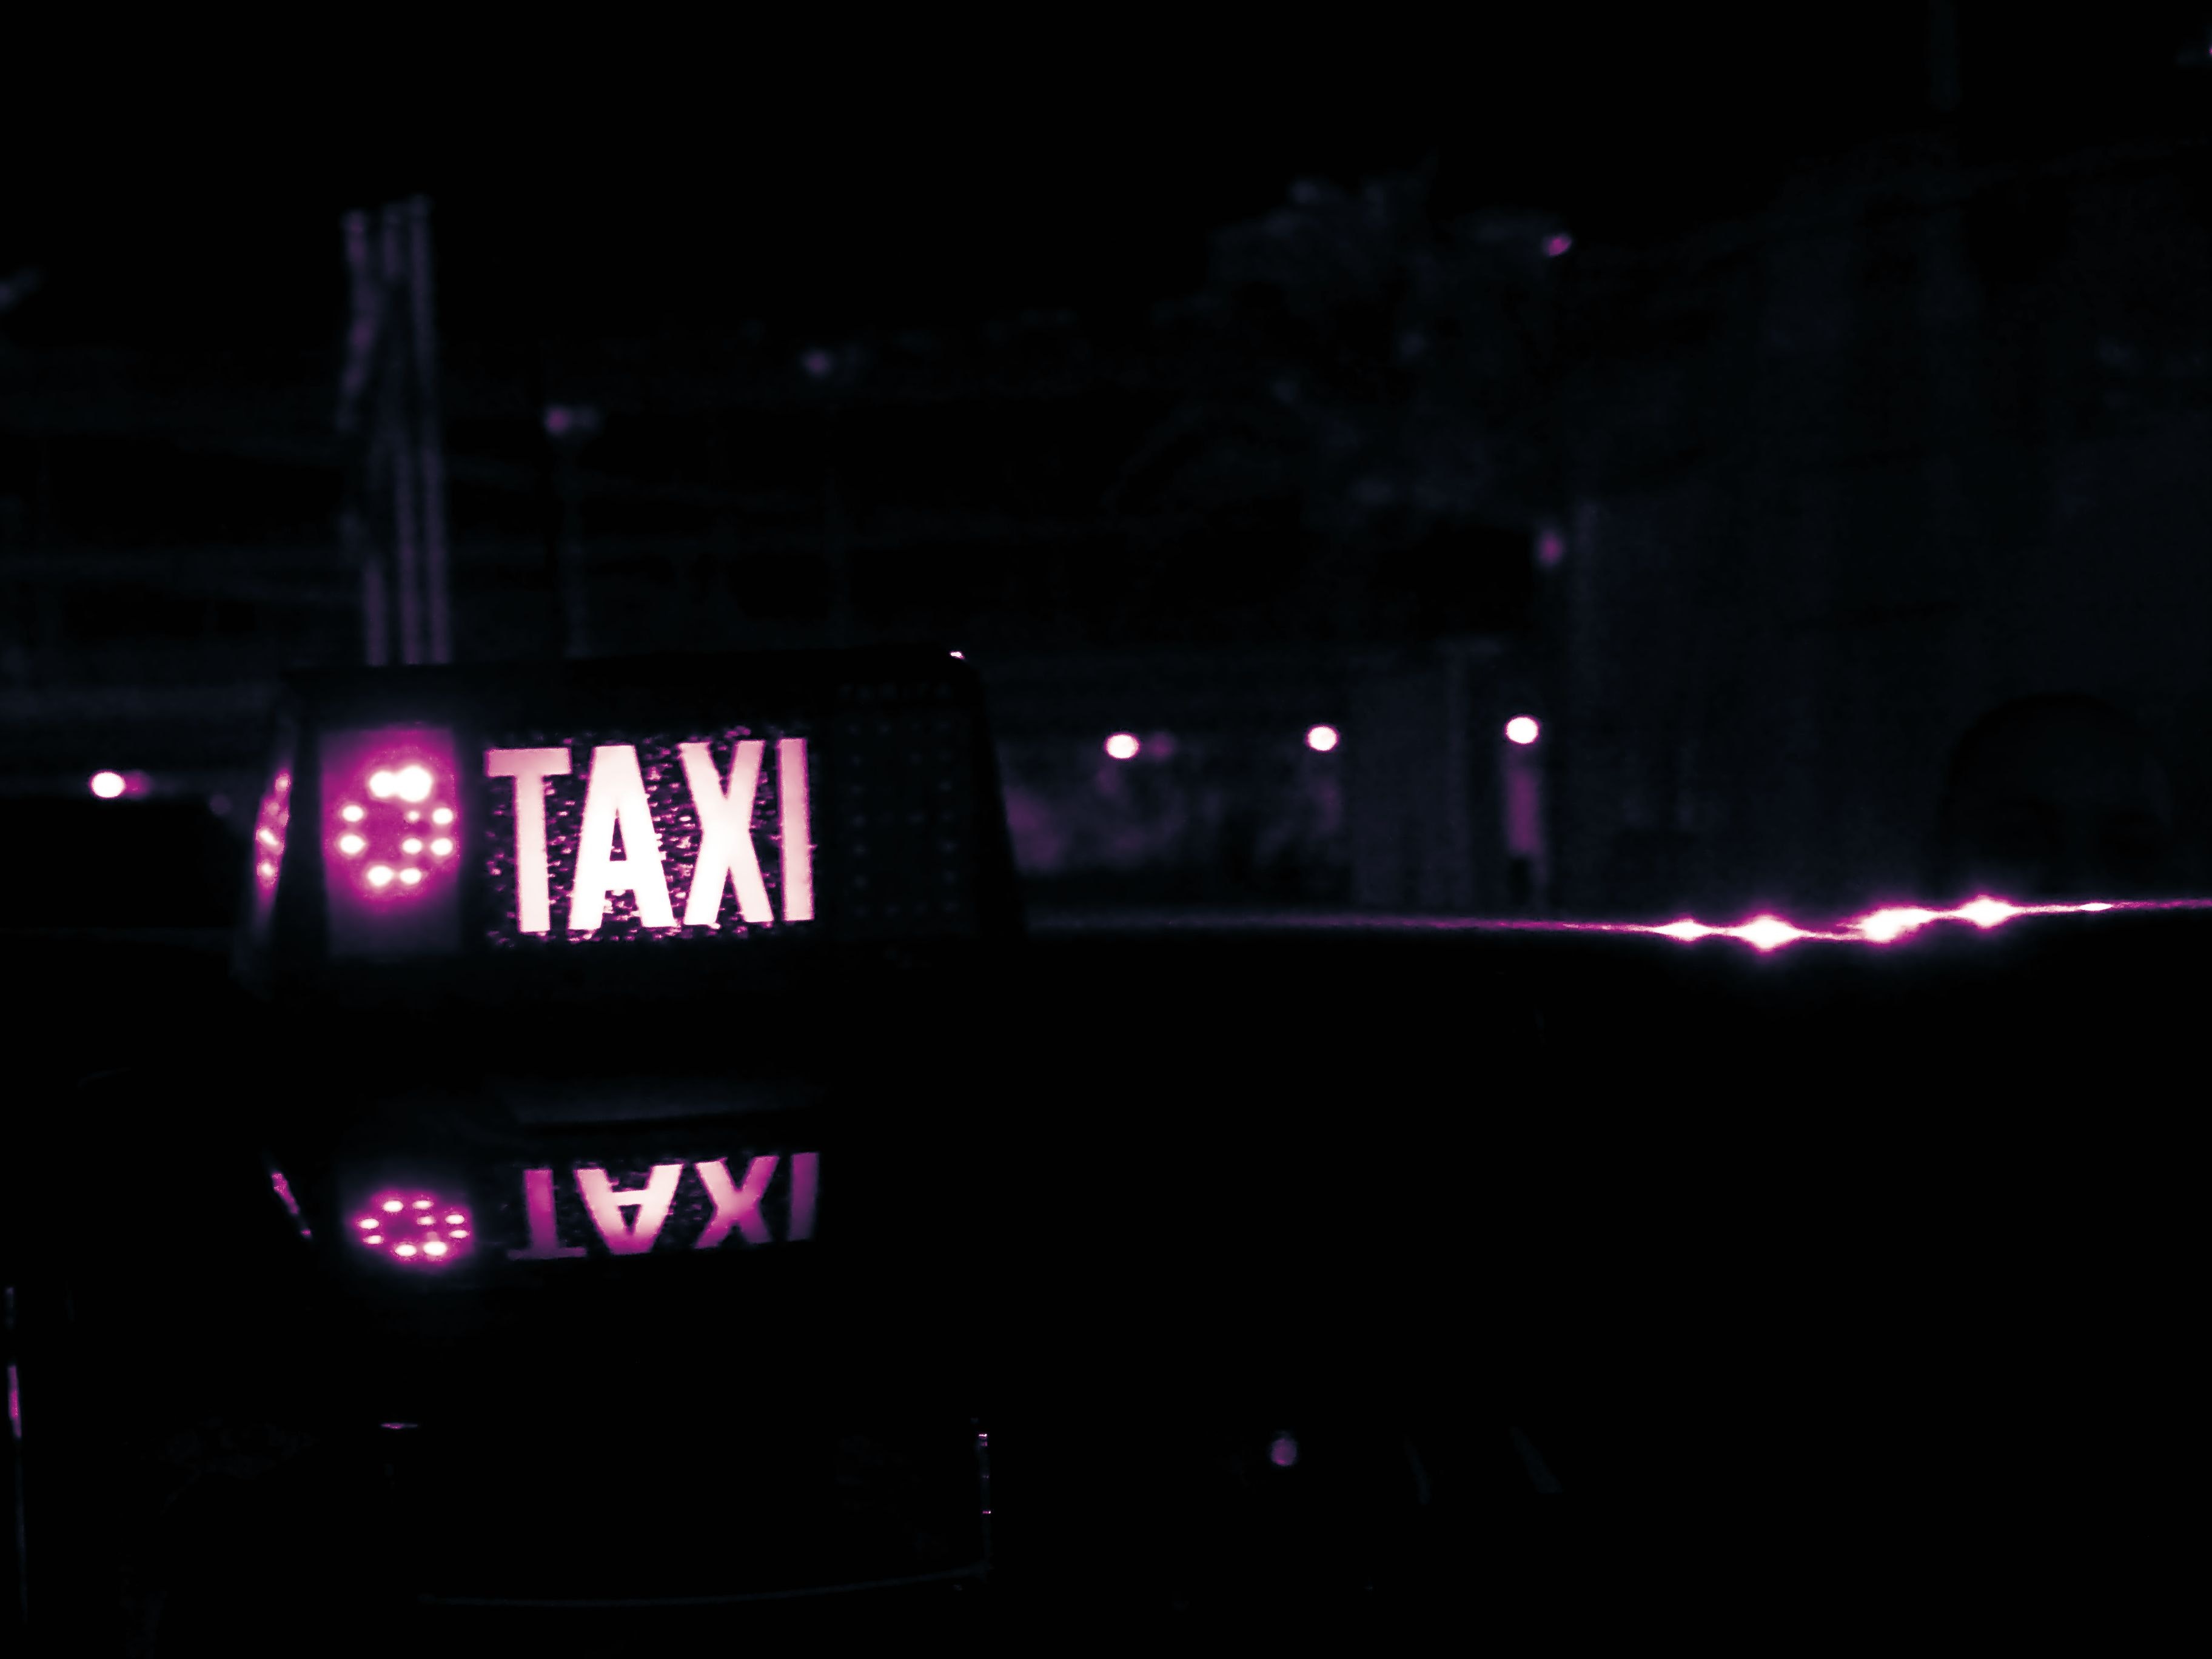 taxiimg/2.jpg